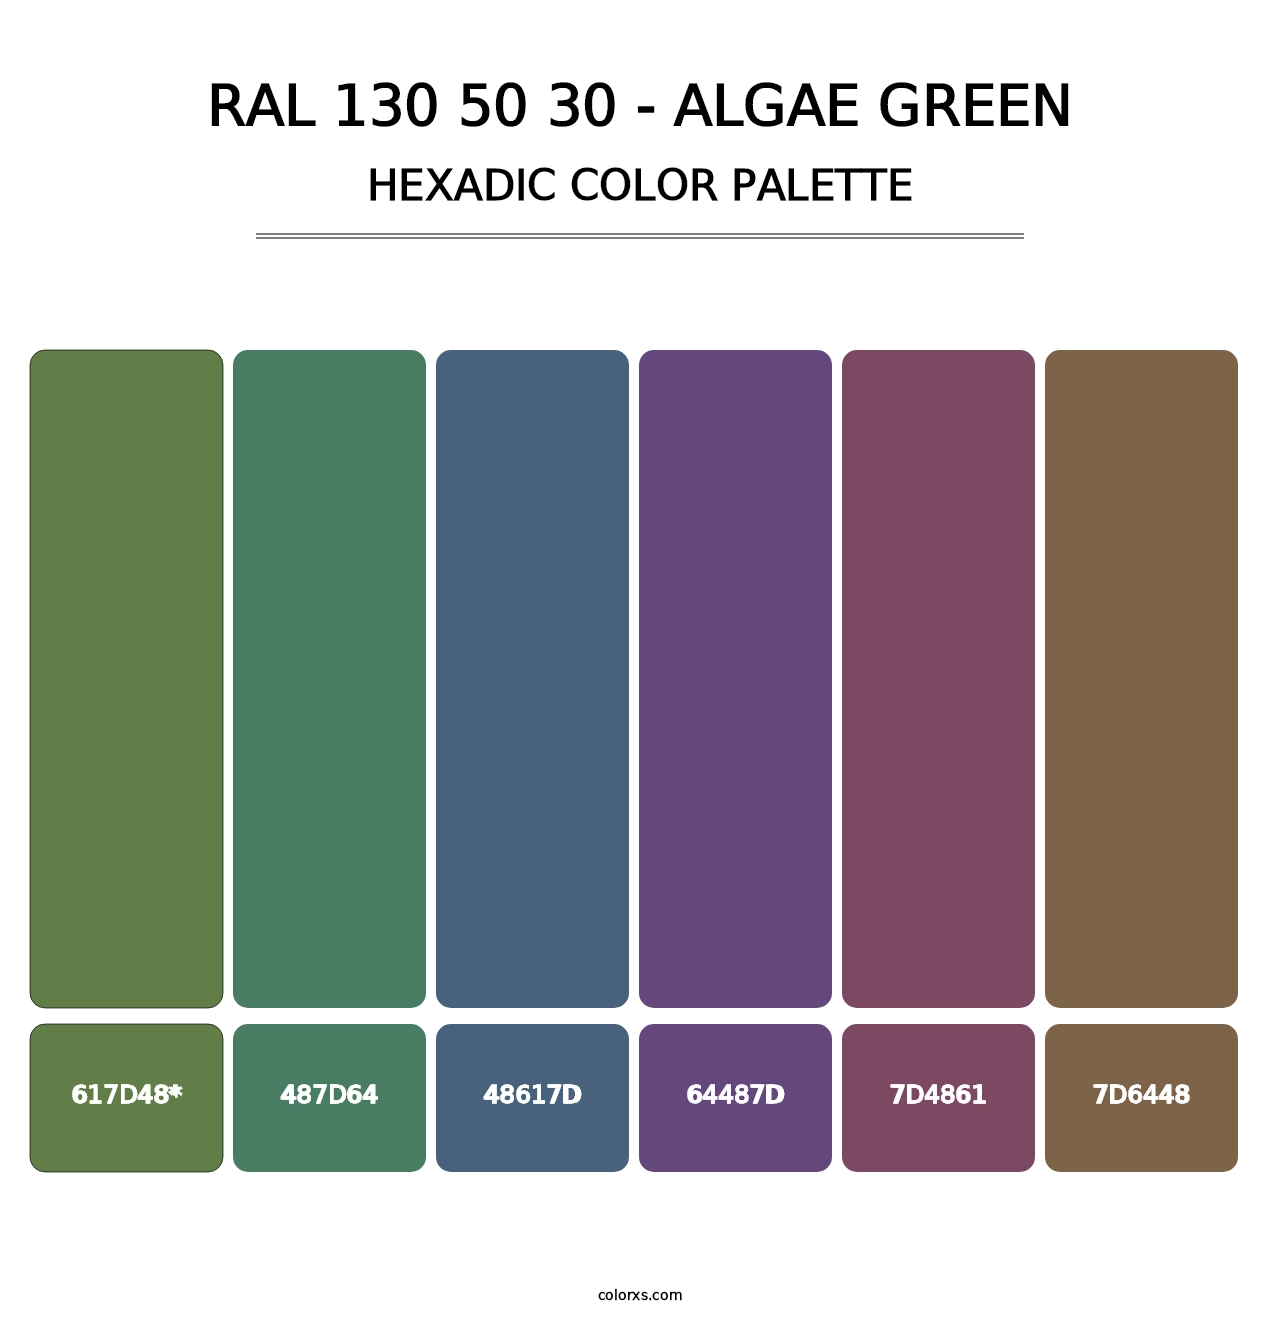 RAL 130 50 30 - Algae Green - Hexadic Color Palette